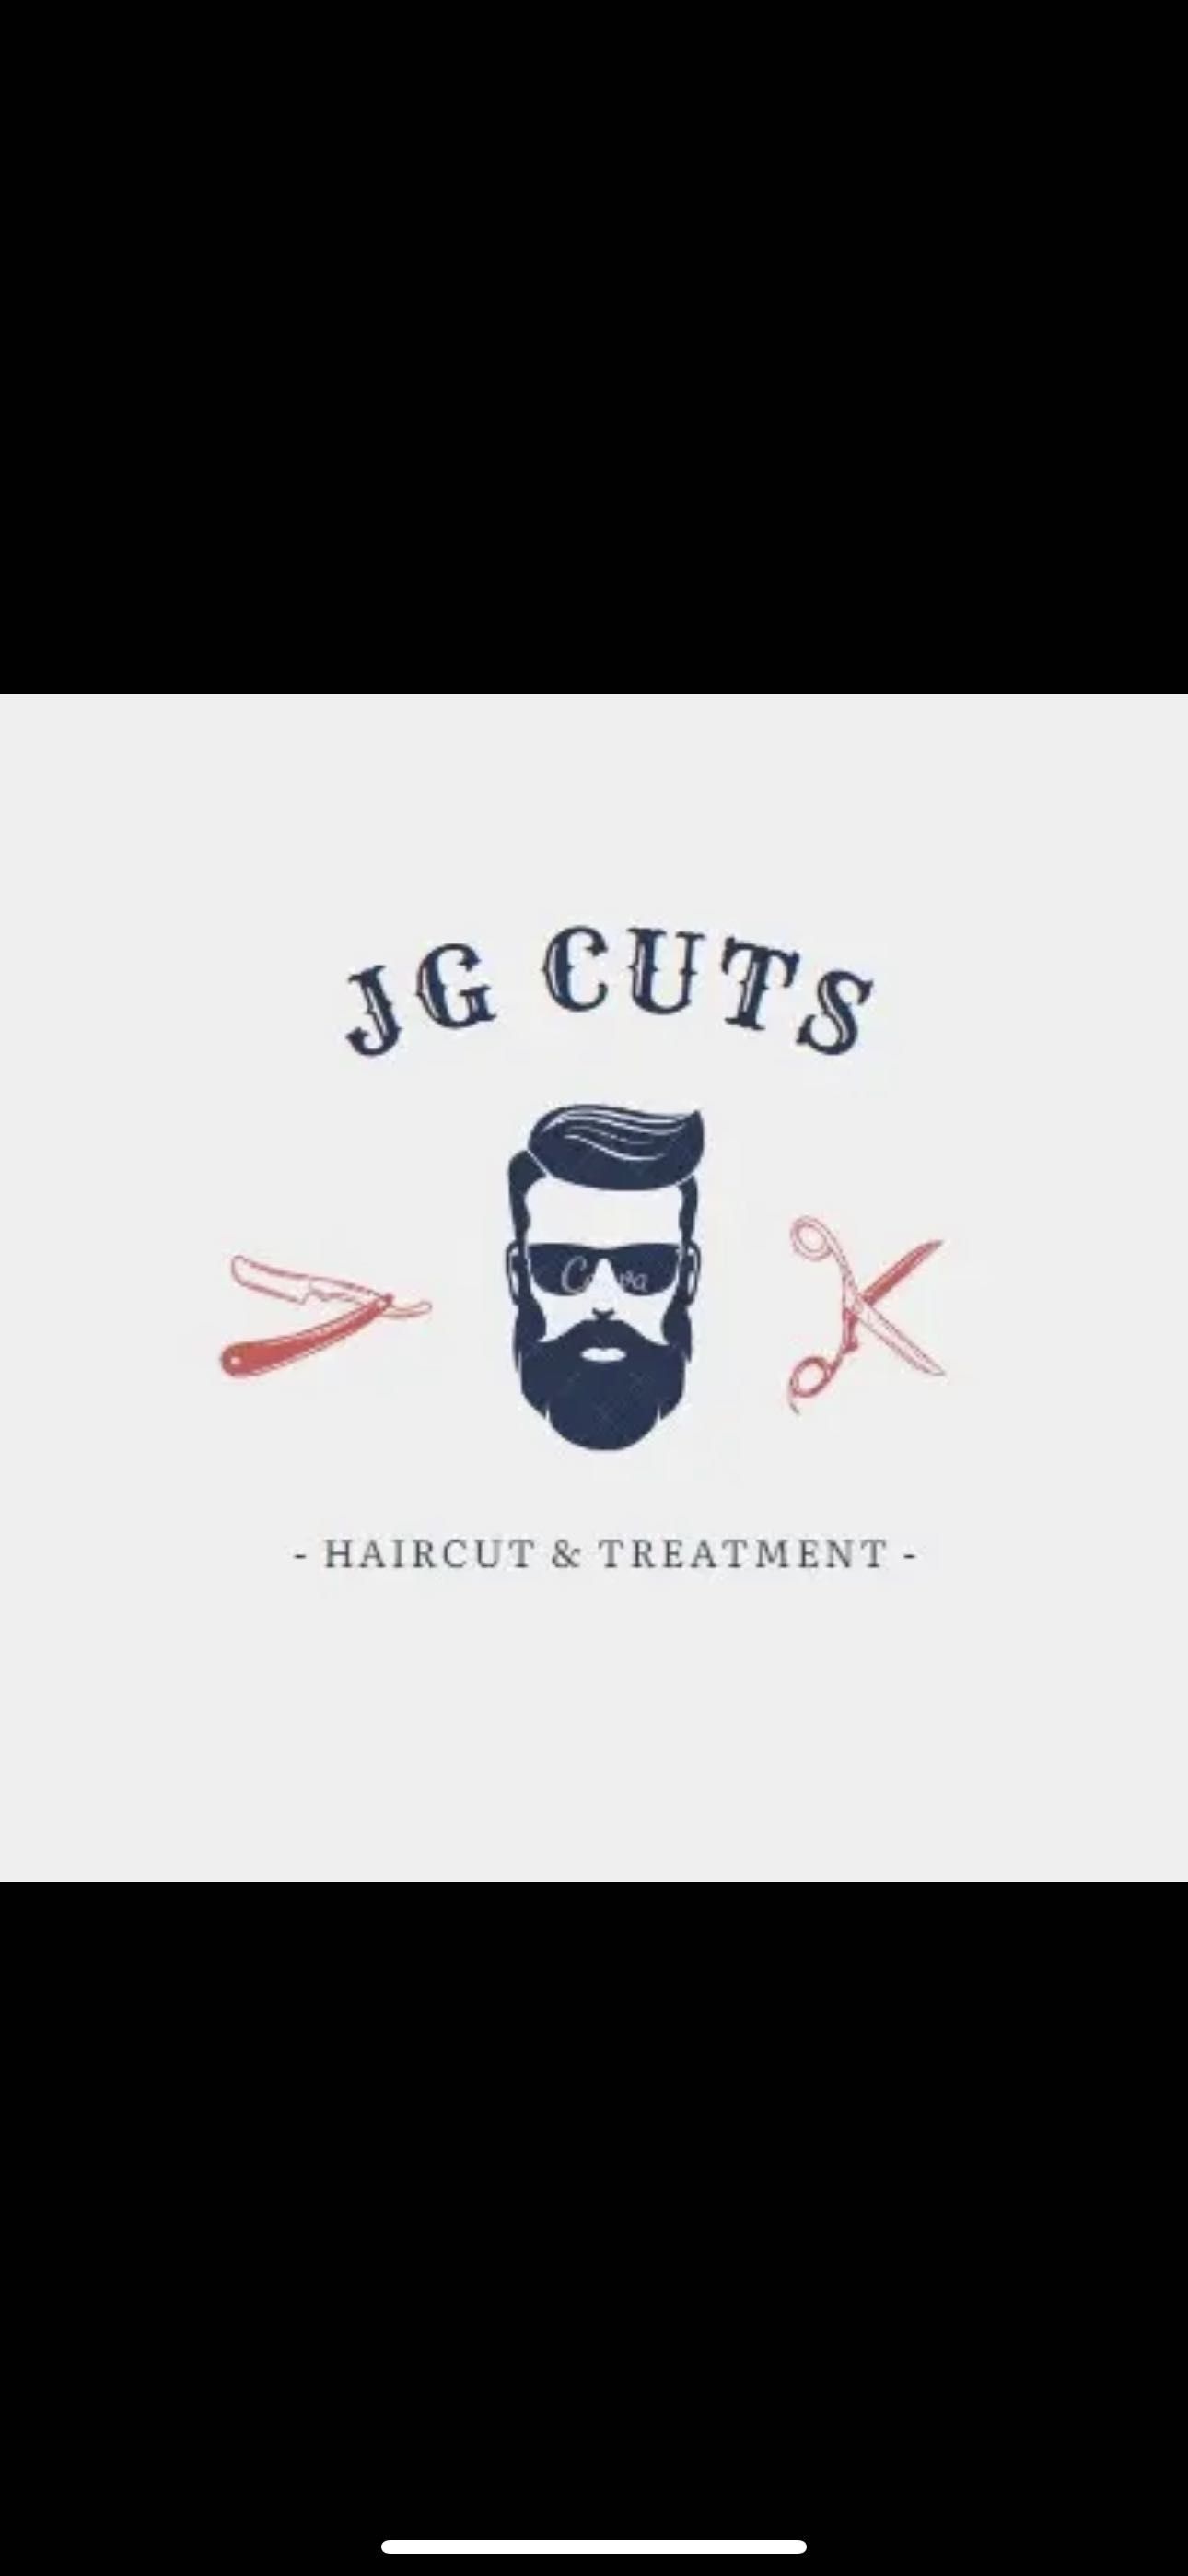 J.G the Barber @ Artcutech, 7229 Centreville Rd, Manassas, 20111